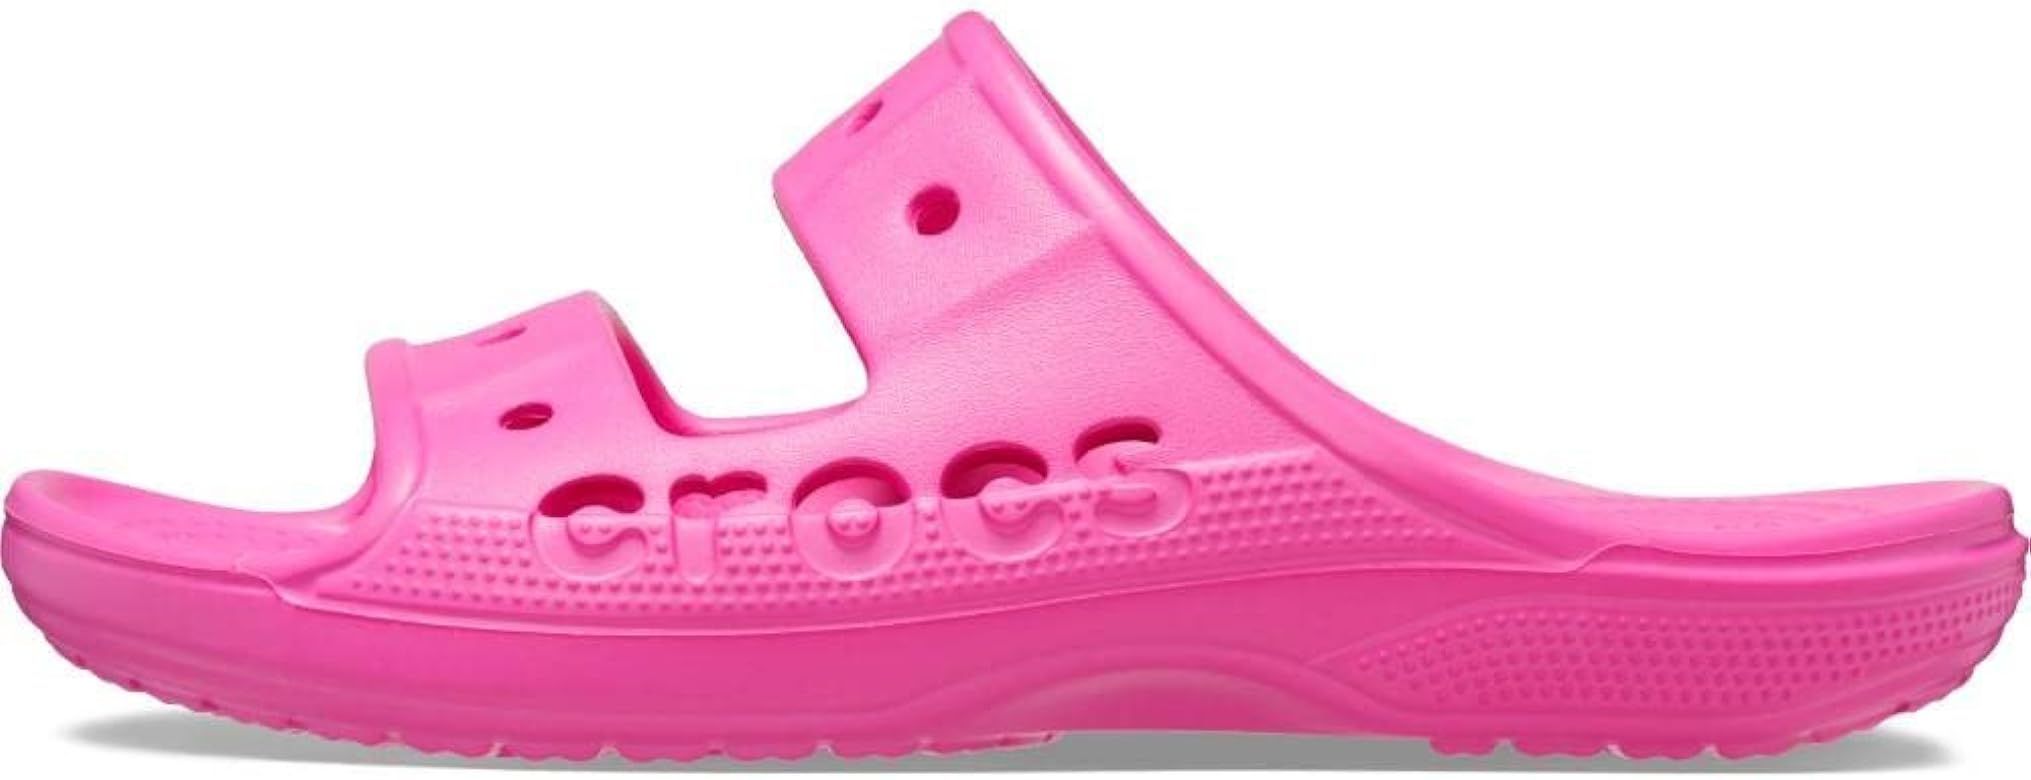 Crocs Unisex-Adult Baya Slide Sandal | Amazon (US)